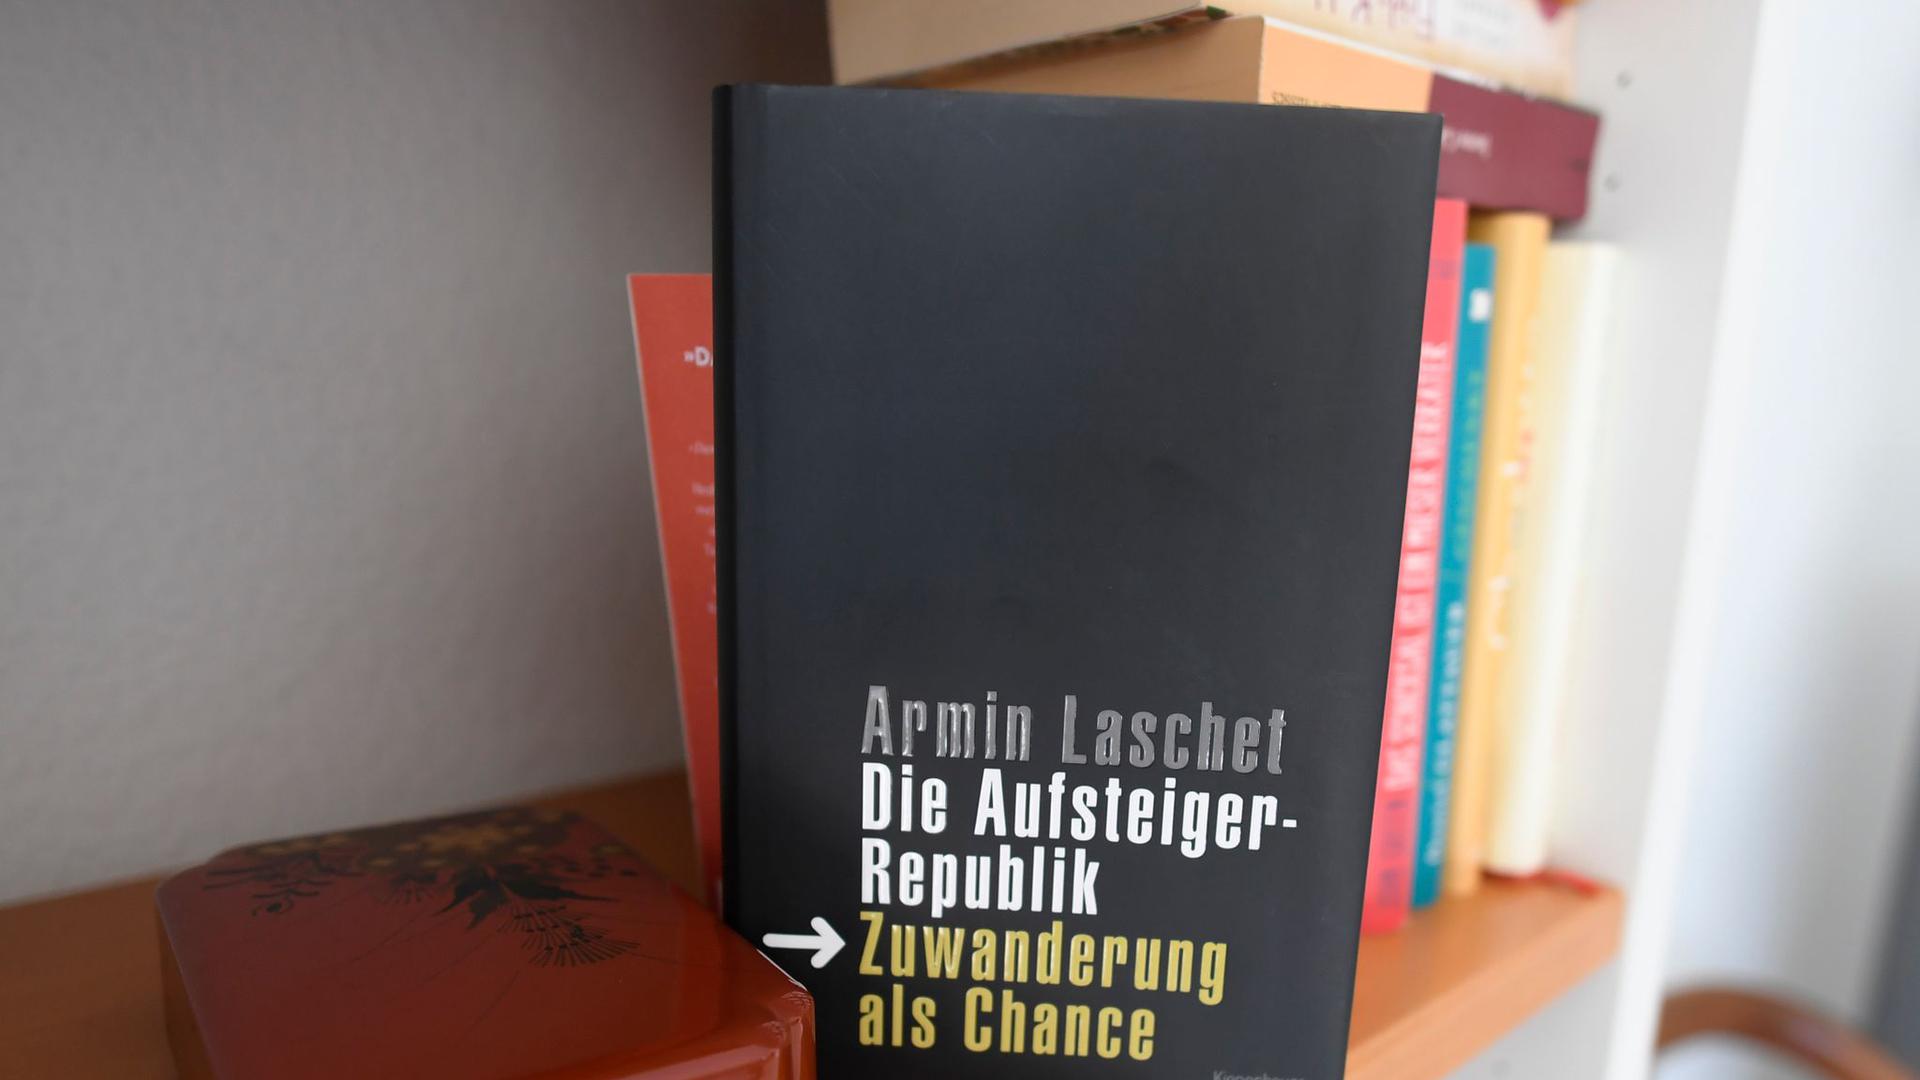 Armin Laschets Buch „Die Aufsteigerrepublik. Zuwanderung als Chance“ ist 2009 erschienen.